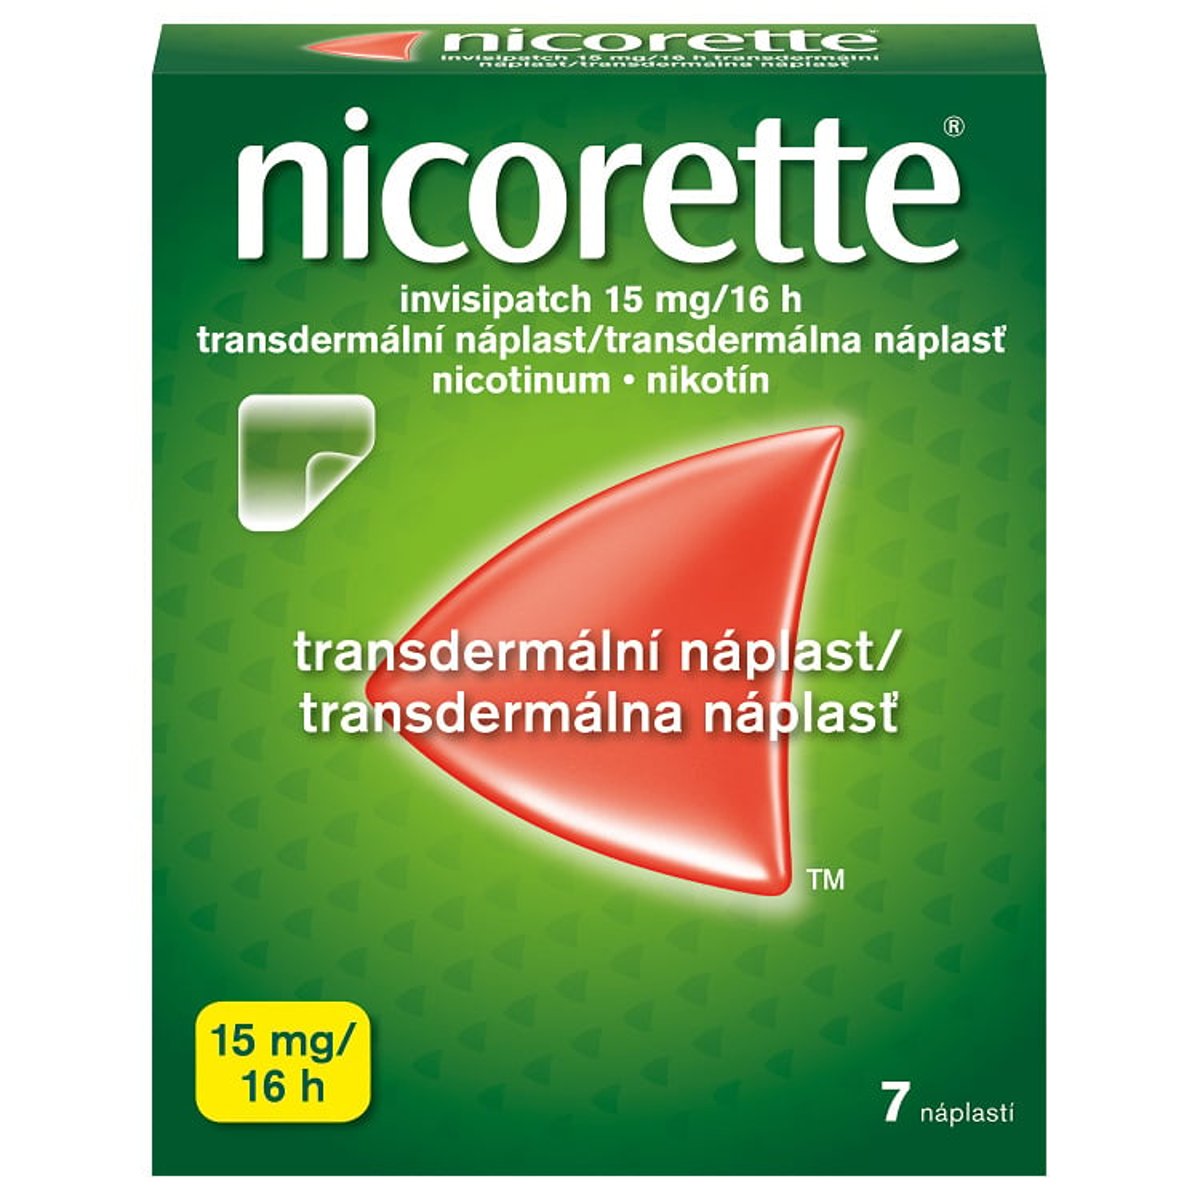 NICORETTE INVISIPATCH 15MG/16H Transdermální náplast 7